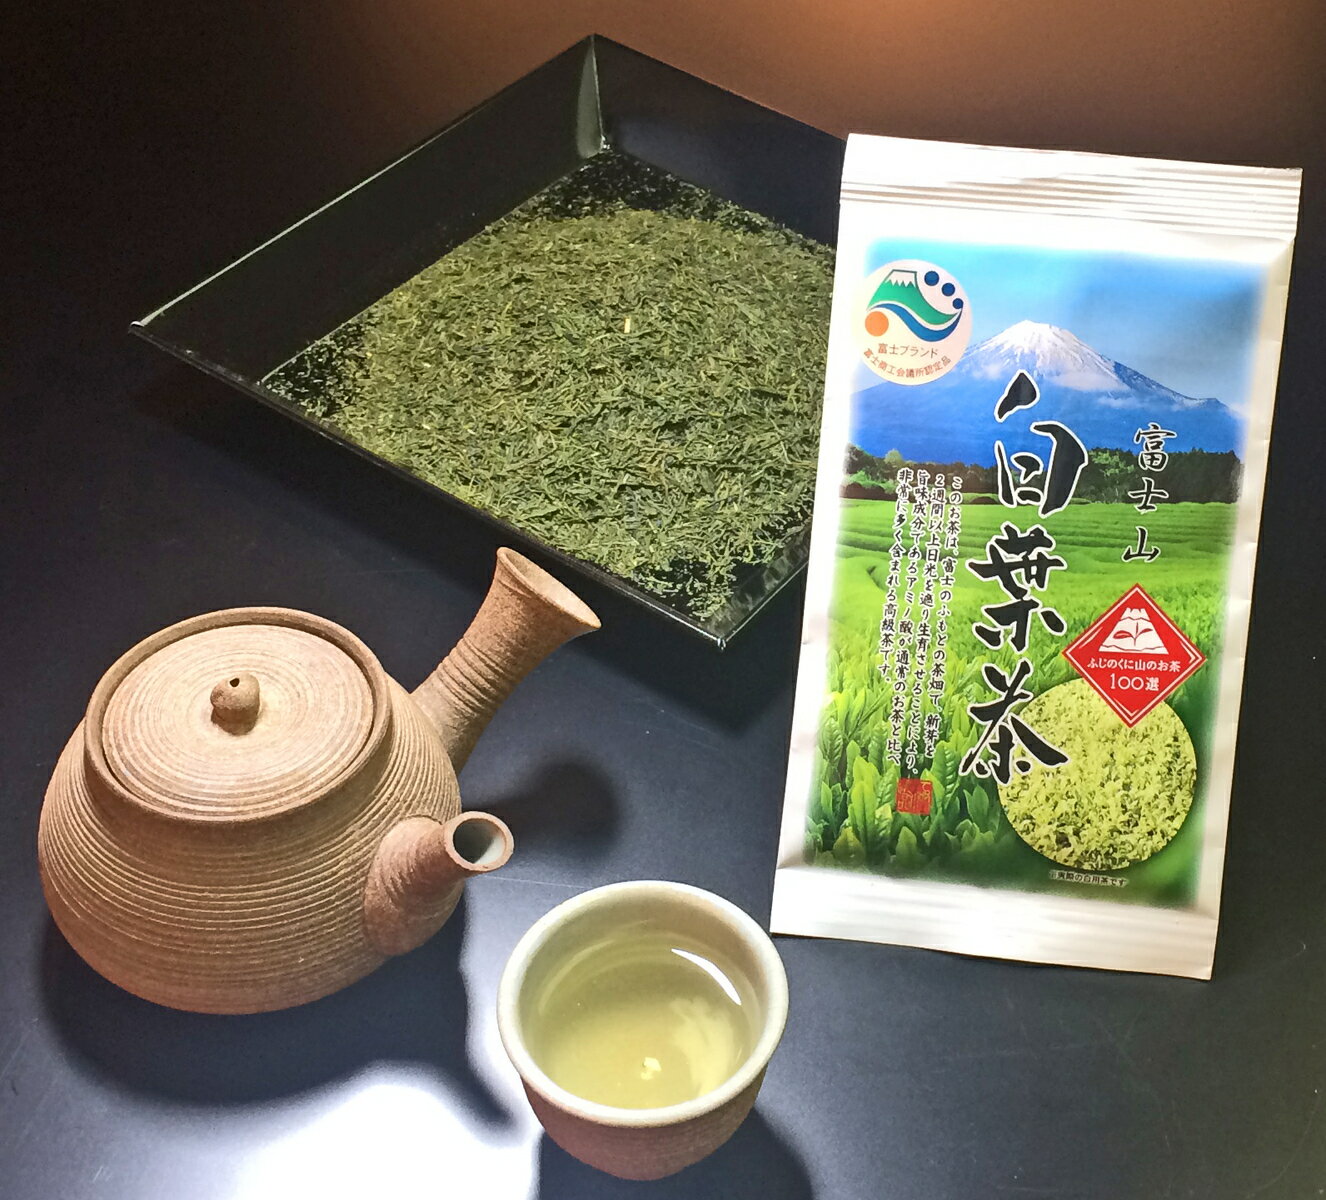 富士ブランド 富士山 白葉茶 30g お茶 葉 緑茶 日本茶 煎茶 緑茶 茶葉